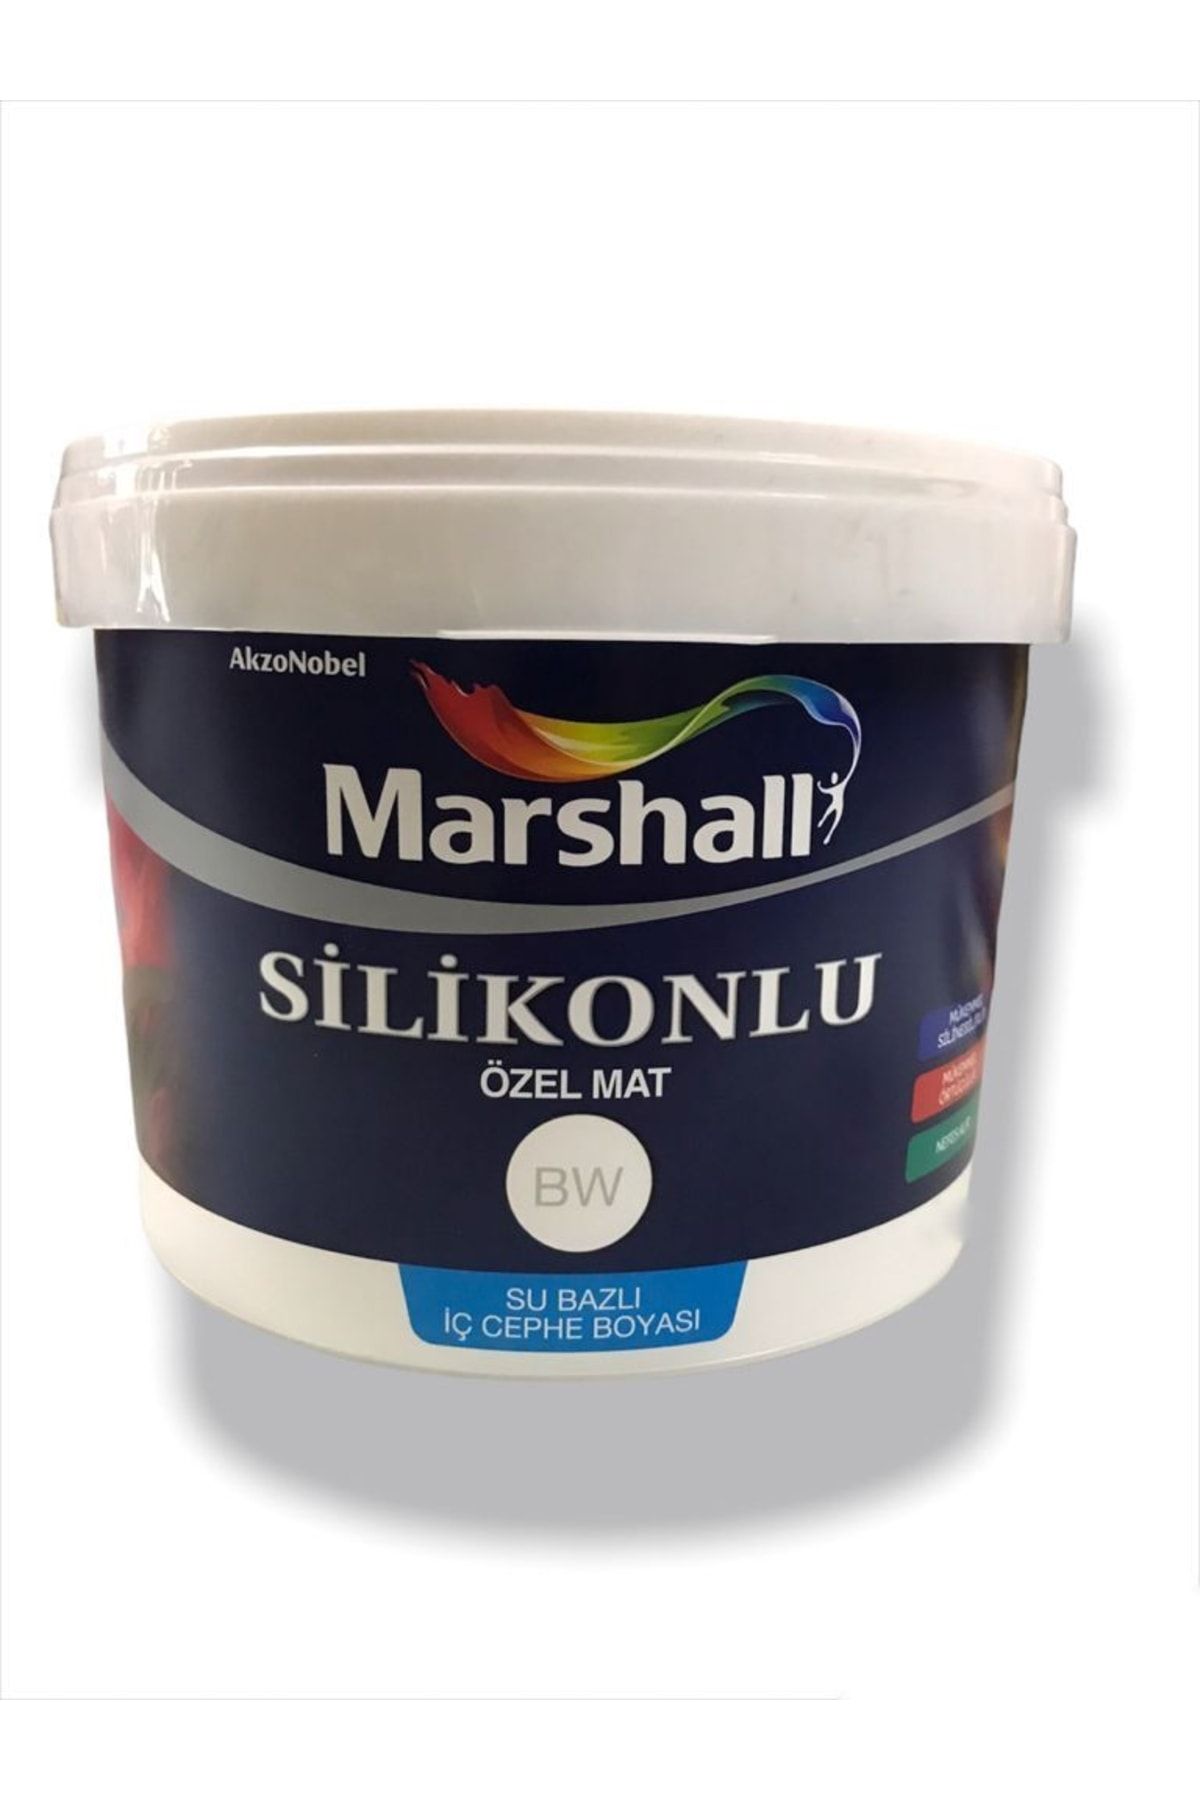 Marshall Silikonlu Özel Mat Tam Silinebilir Iç Cephe Duvar Boyası - 15 Lt. (20 KG) - Badem Ezmesi Rengi